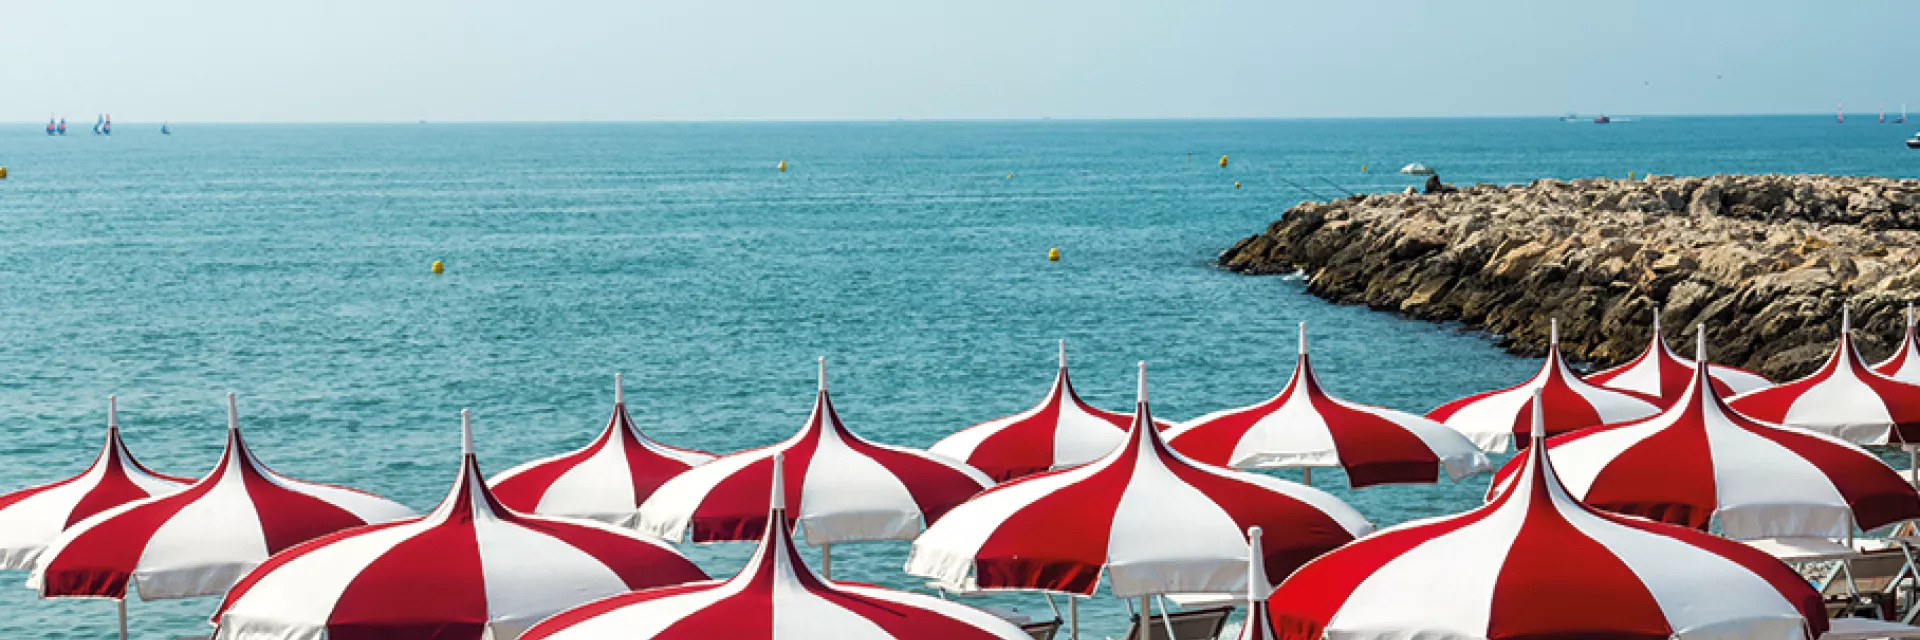 Vos vacances sur la Côte d'Azur